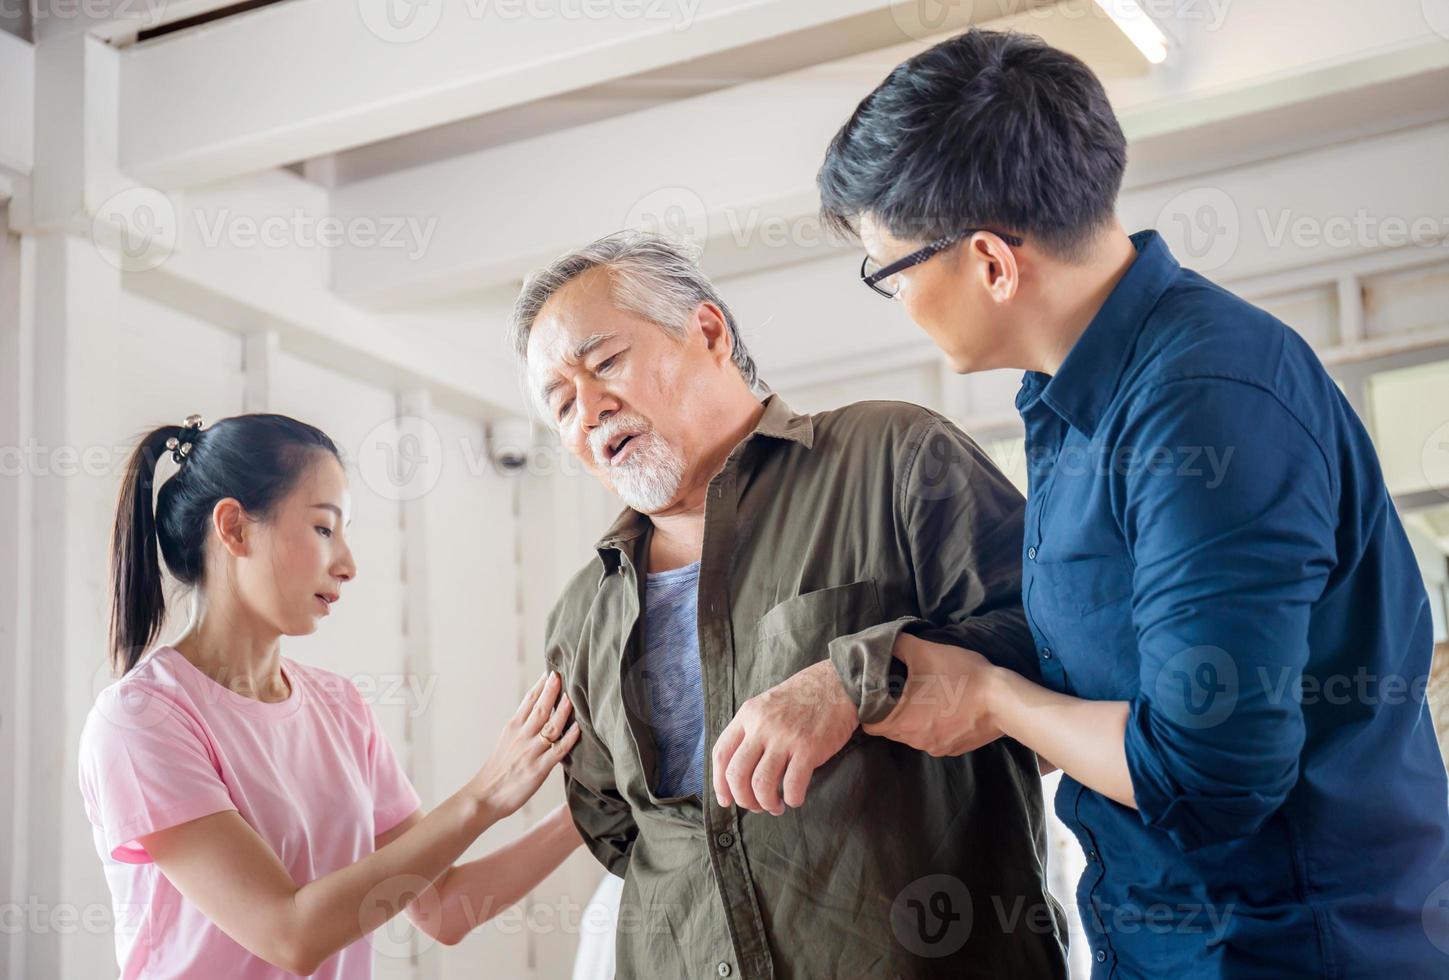 fils et fille aident à soutenir un père âgé qui a mal au dos, mal au dos chez les personnes âgées, concepts de famille asiatique photo